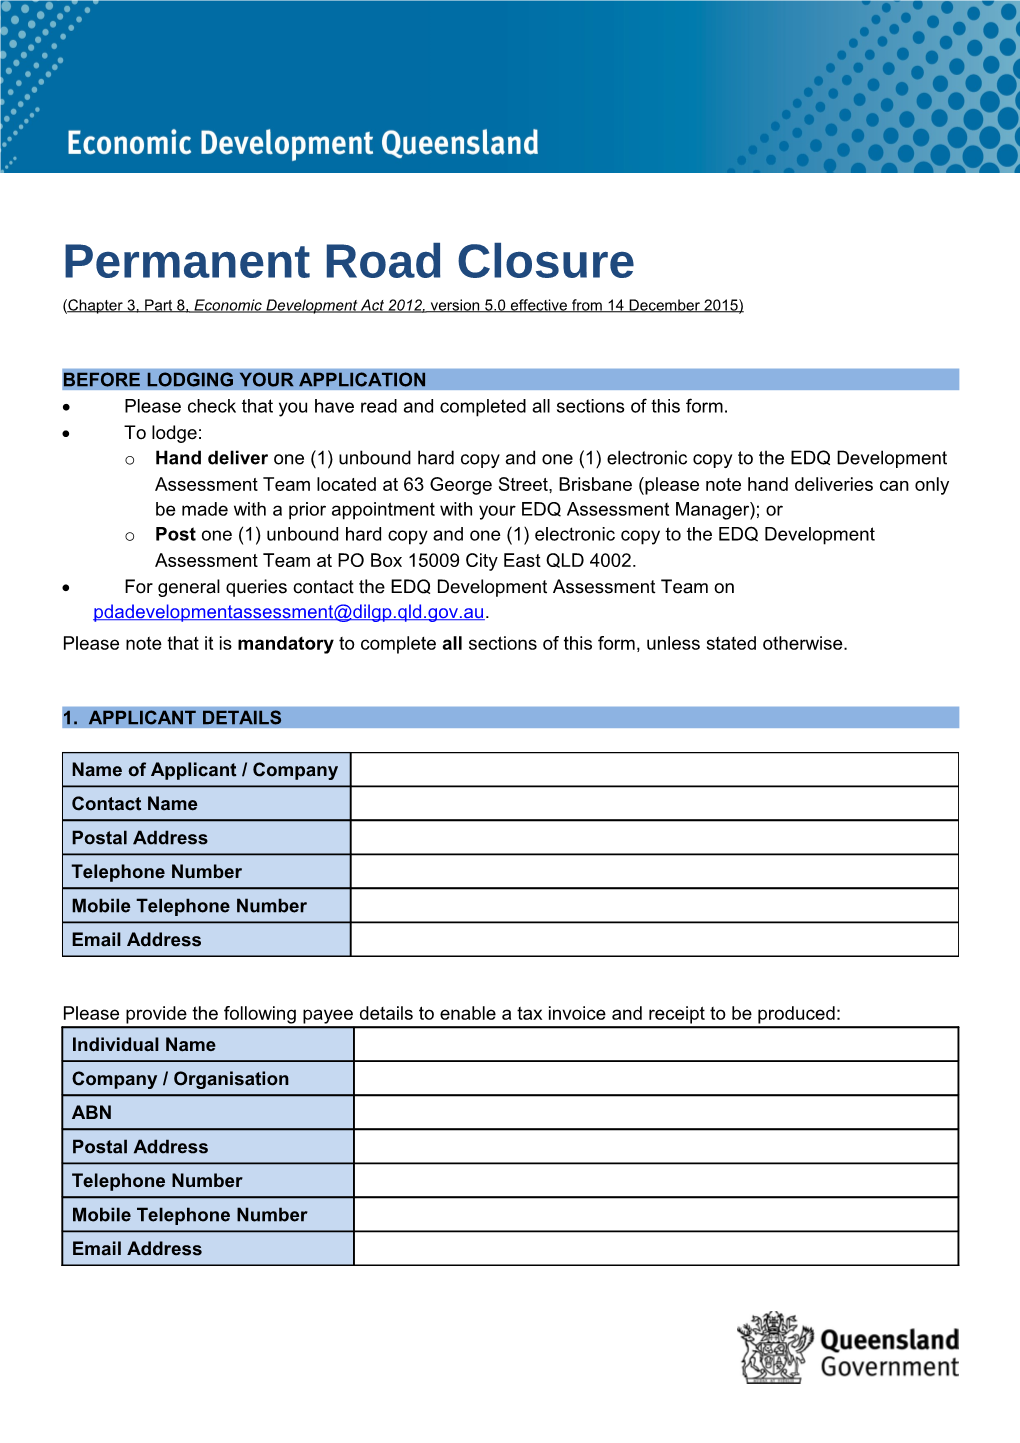 Permanent Road Closure Form